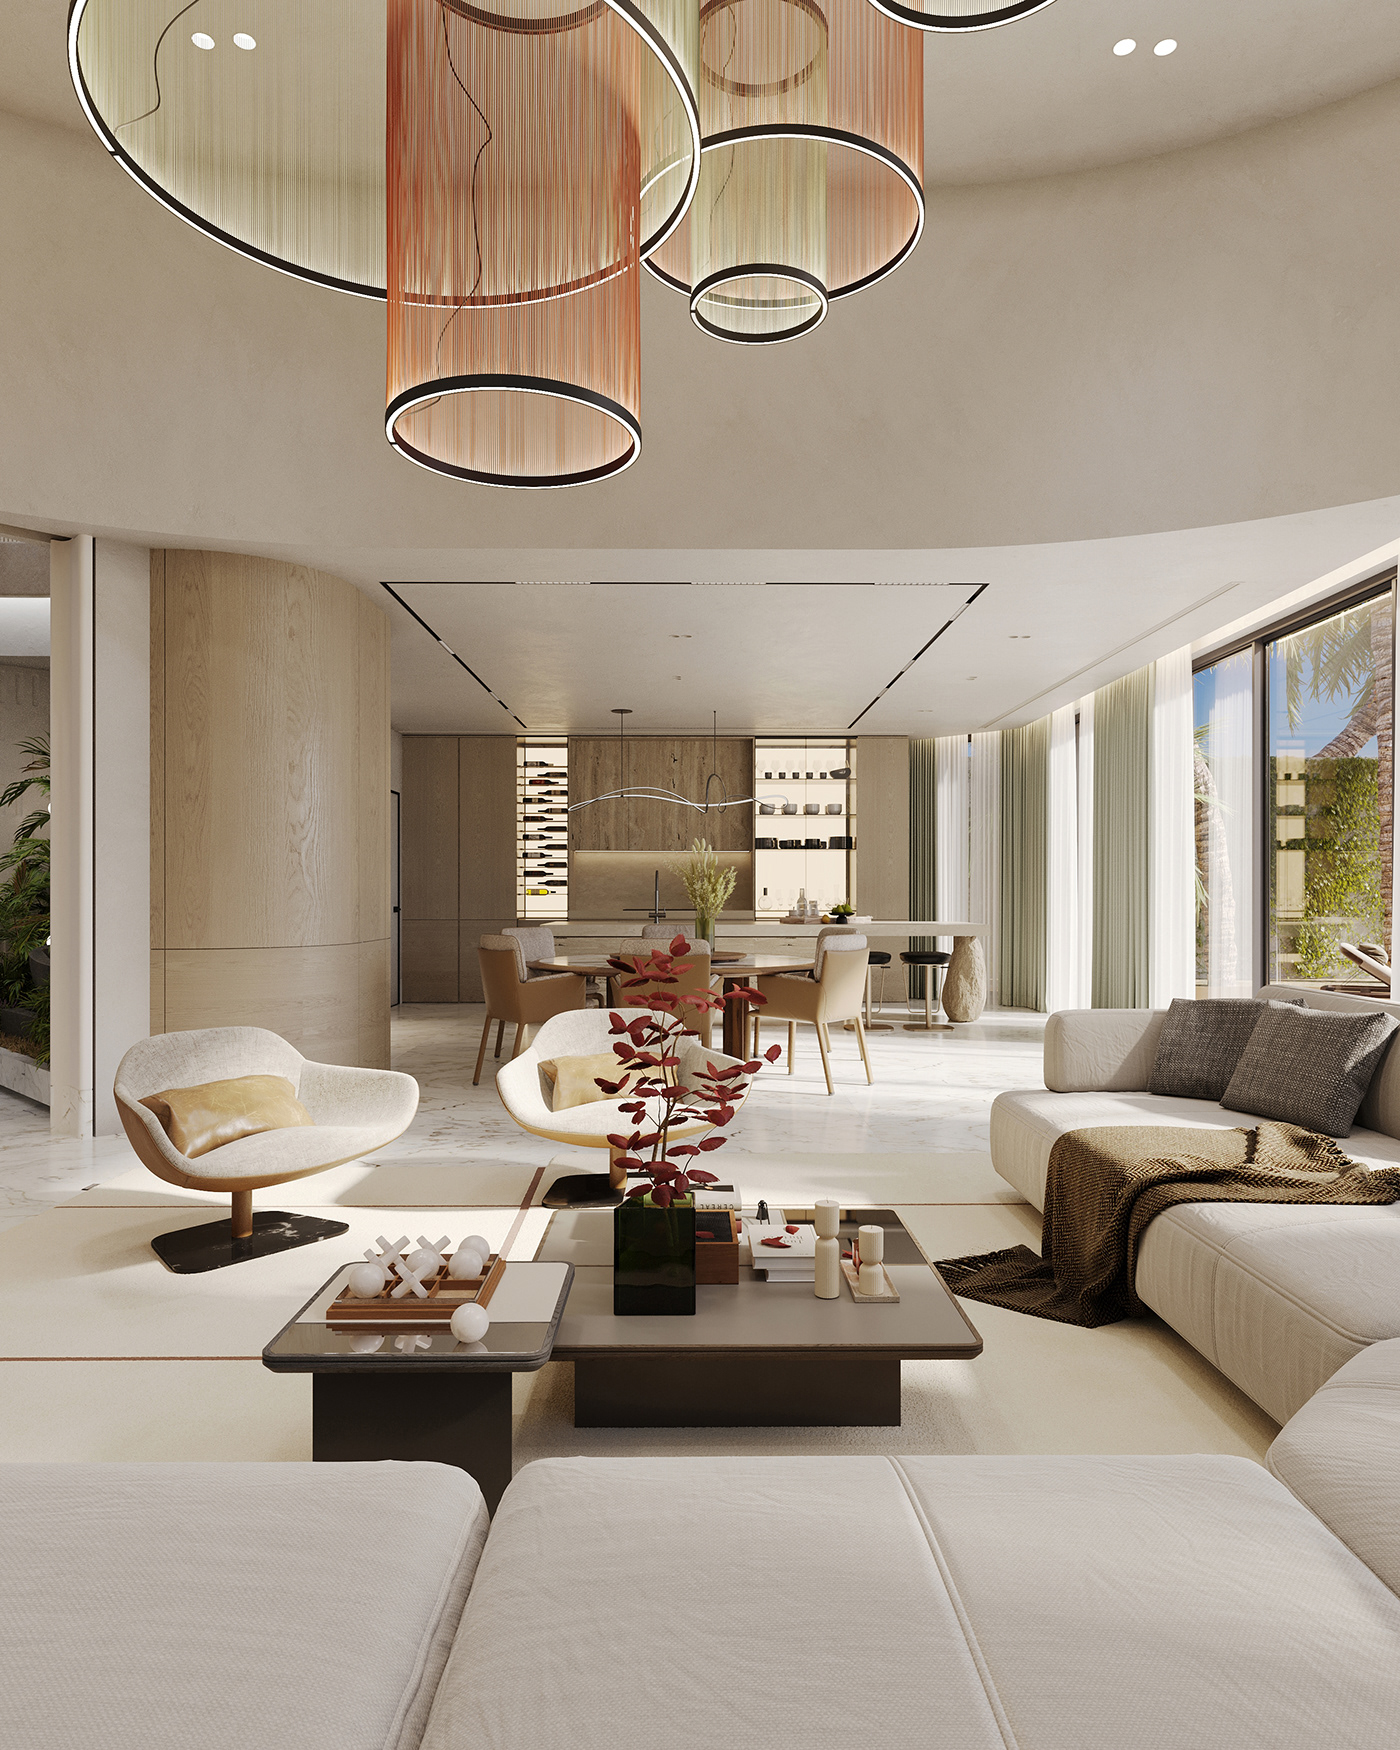 dubai Villa interior design  living room kitchen visualization Render dining Interior garden